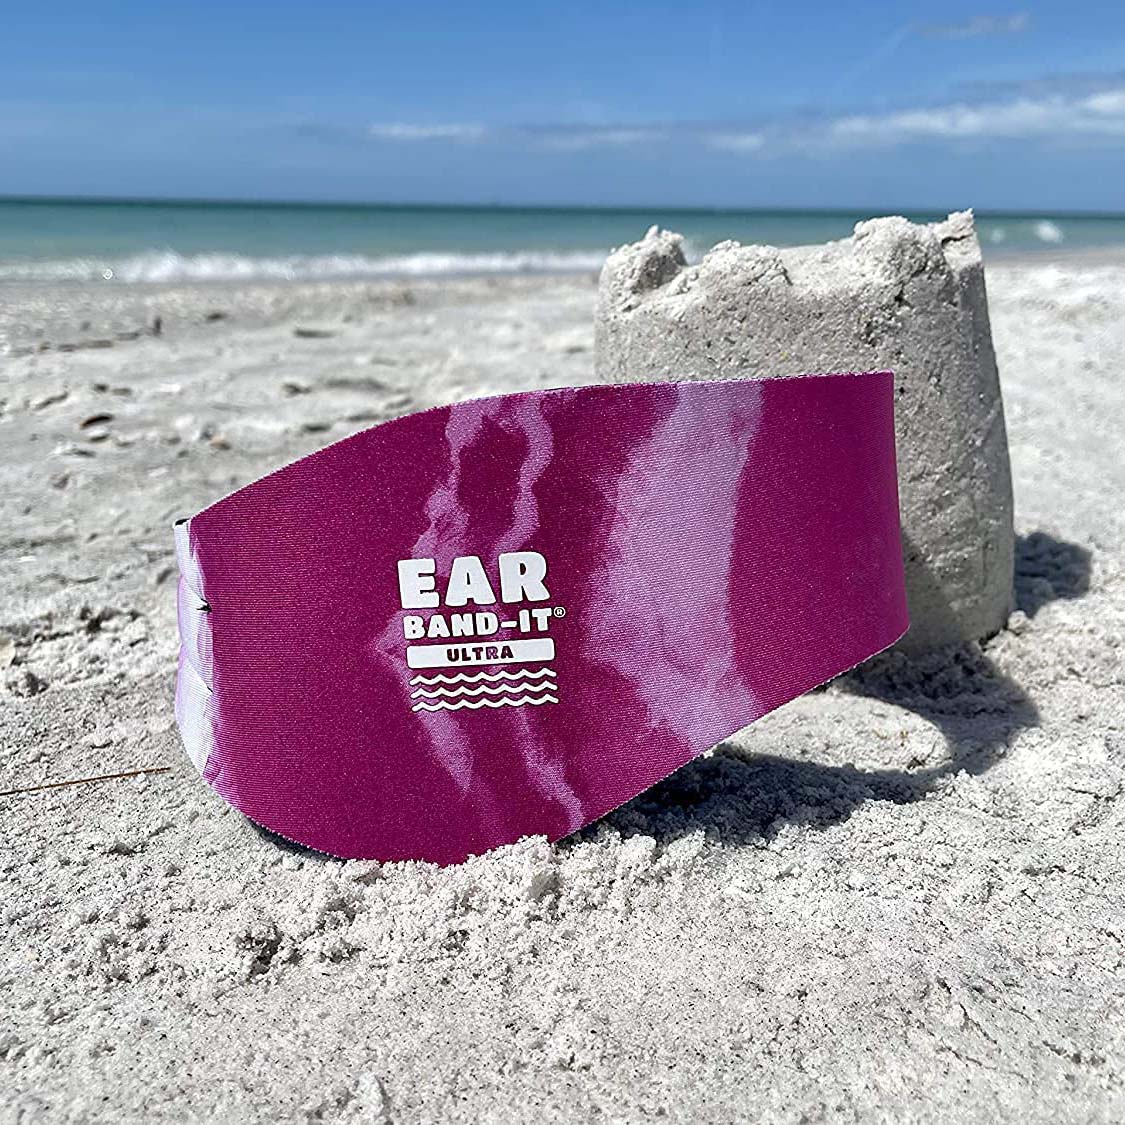 Ear Band-It Ultra Swimmer's Headband - Tie Dye Pink